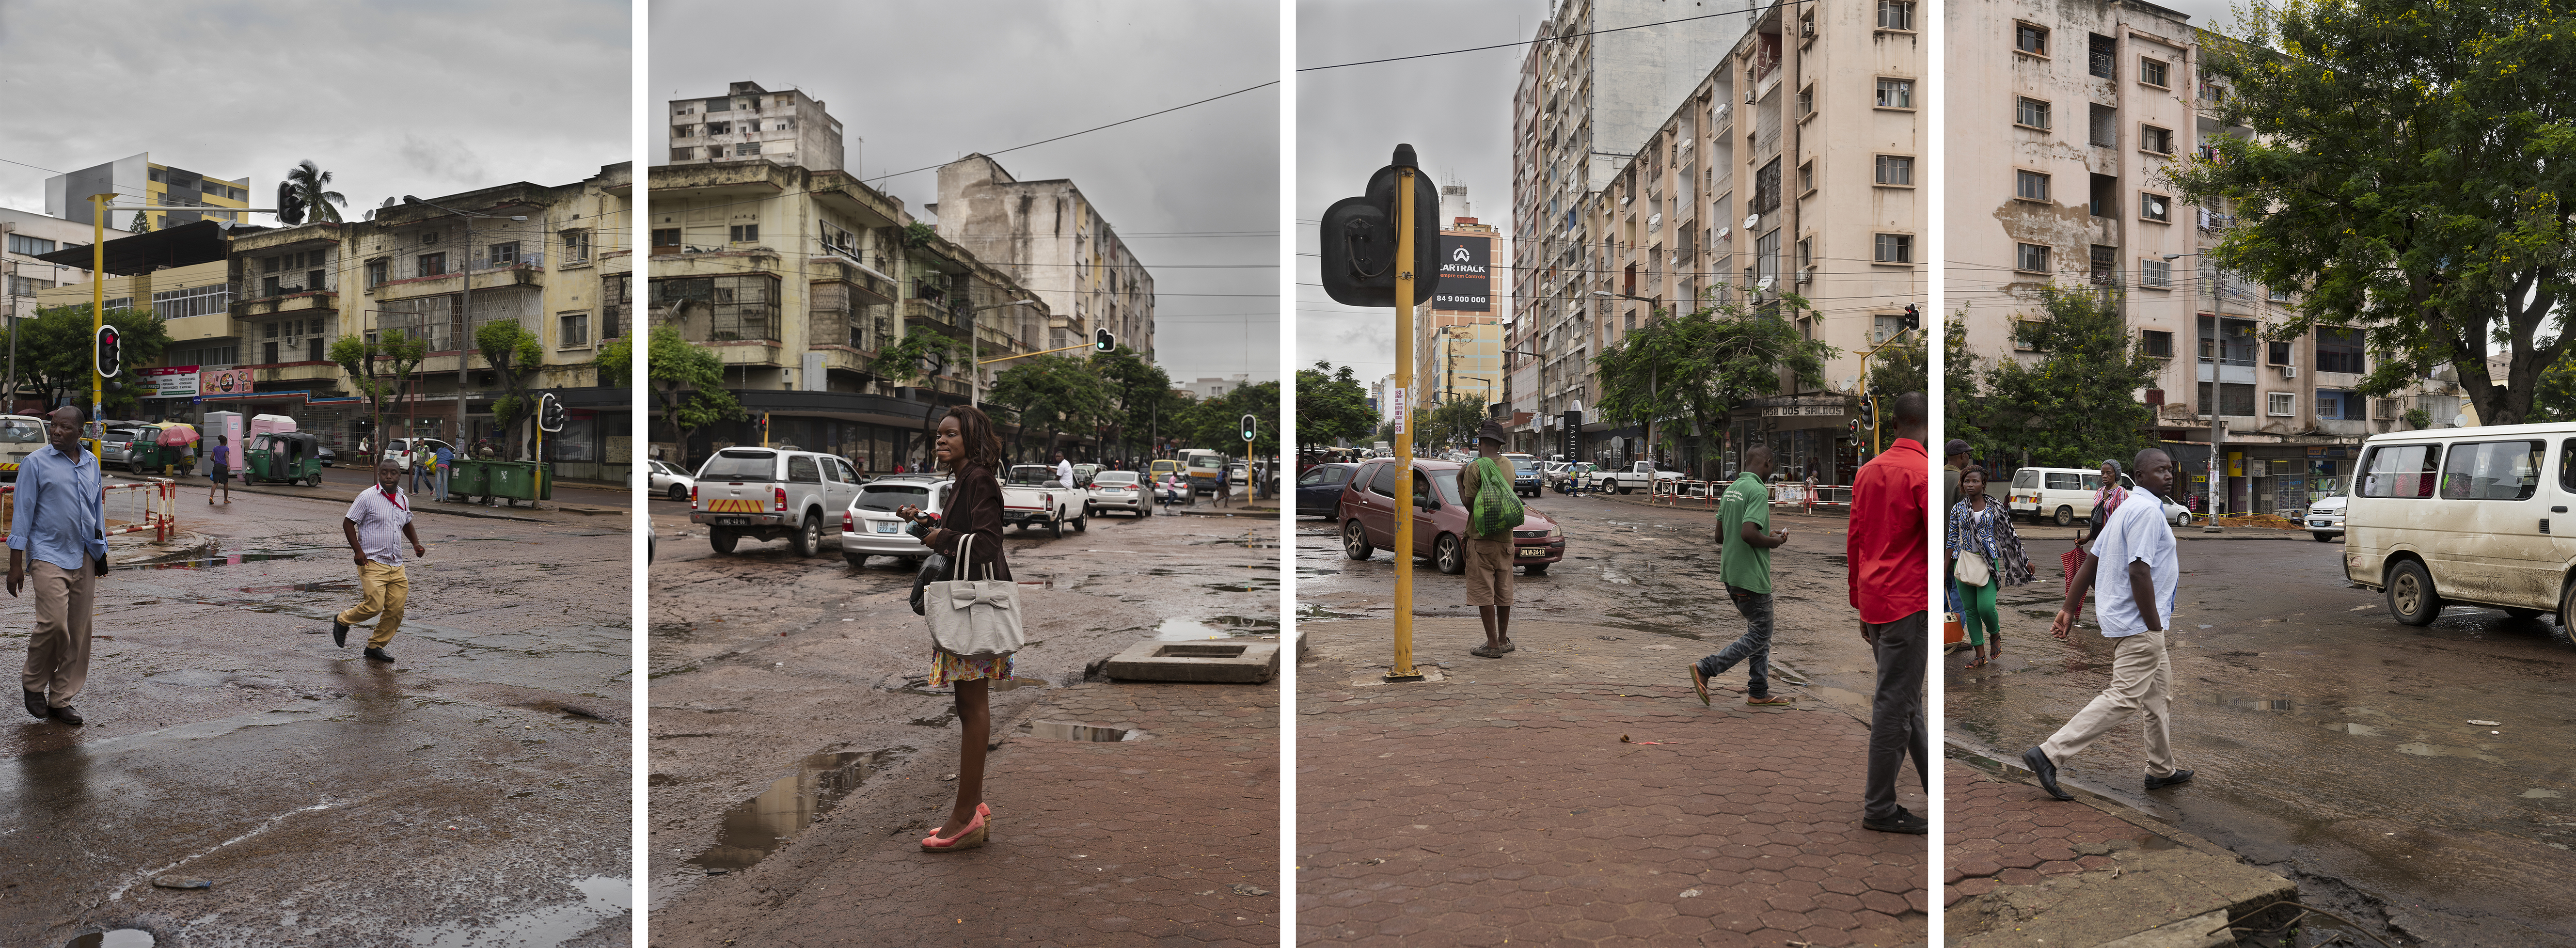  - Avenida 24 de Julho, Maputo, Mozambique, 2017, 